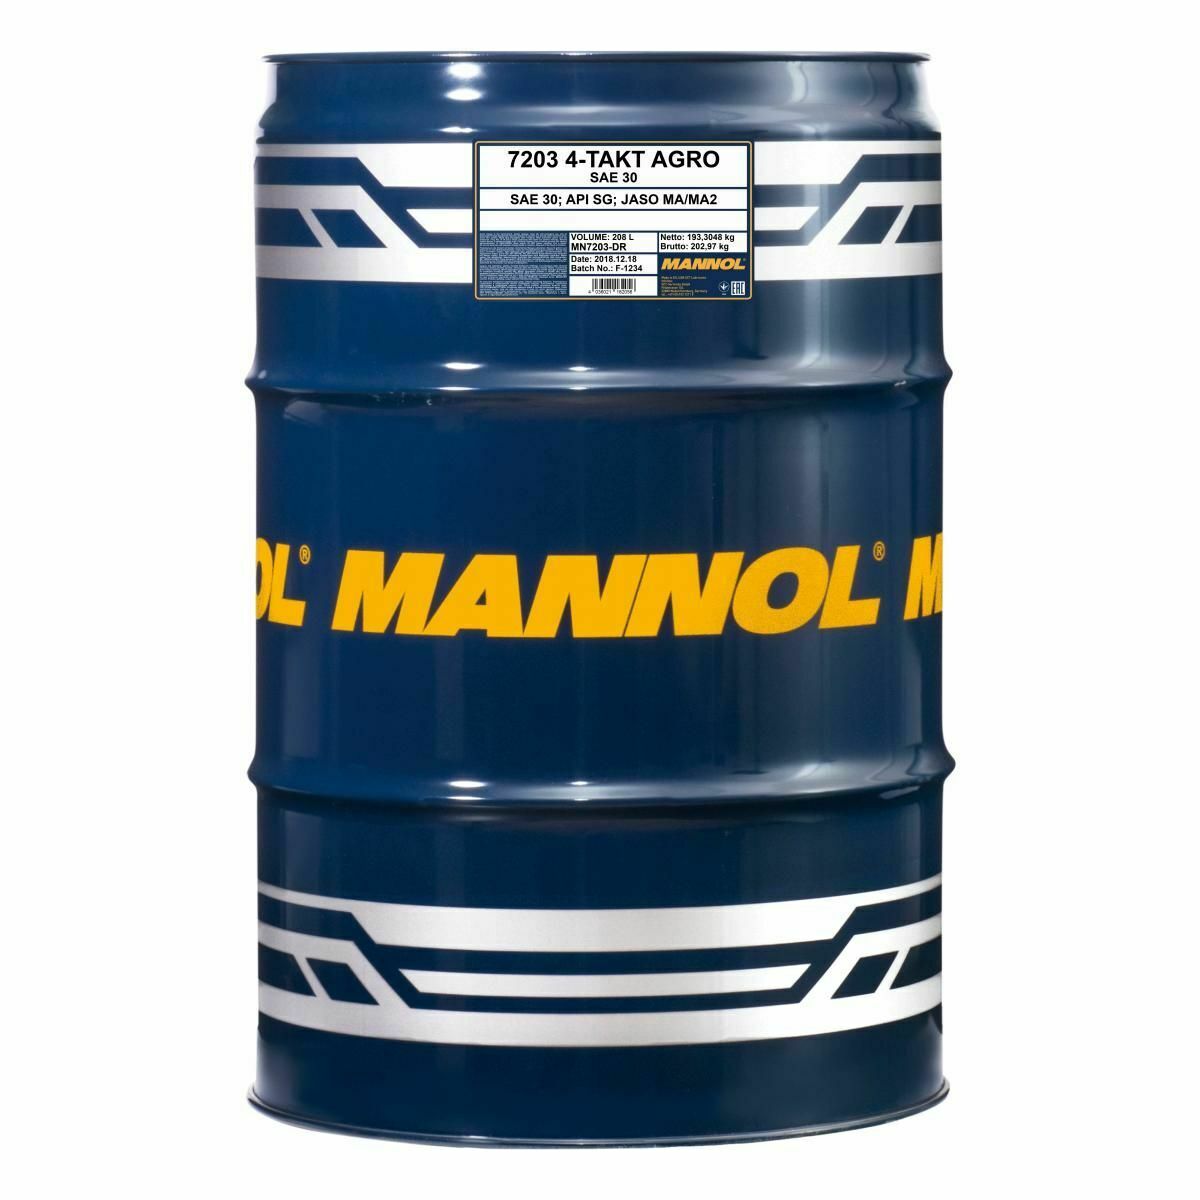 208 Liter MANNOL 4-Takt Agro 7203 SAE 30 API SL Motoröl für Gartengeräte 